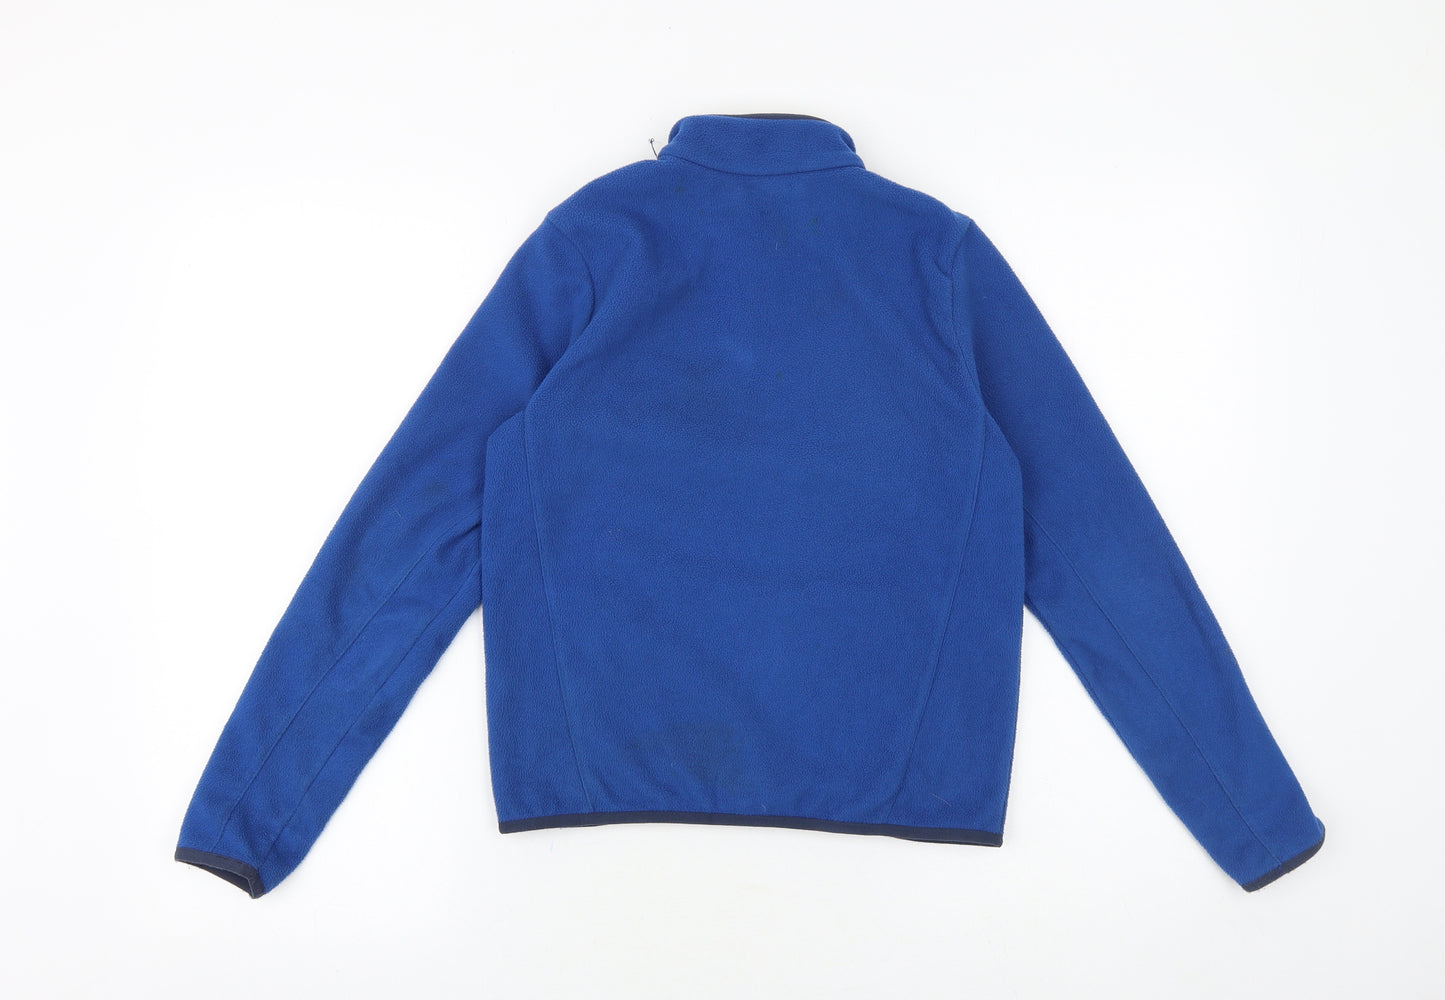 DECATHLON Boys Blue Jacket Size 10-11 Years Zip